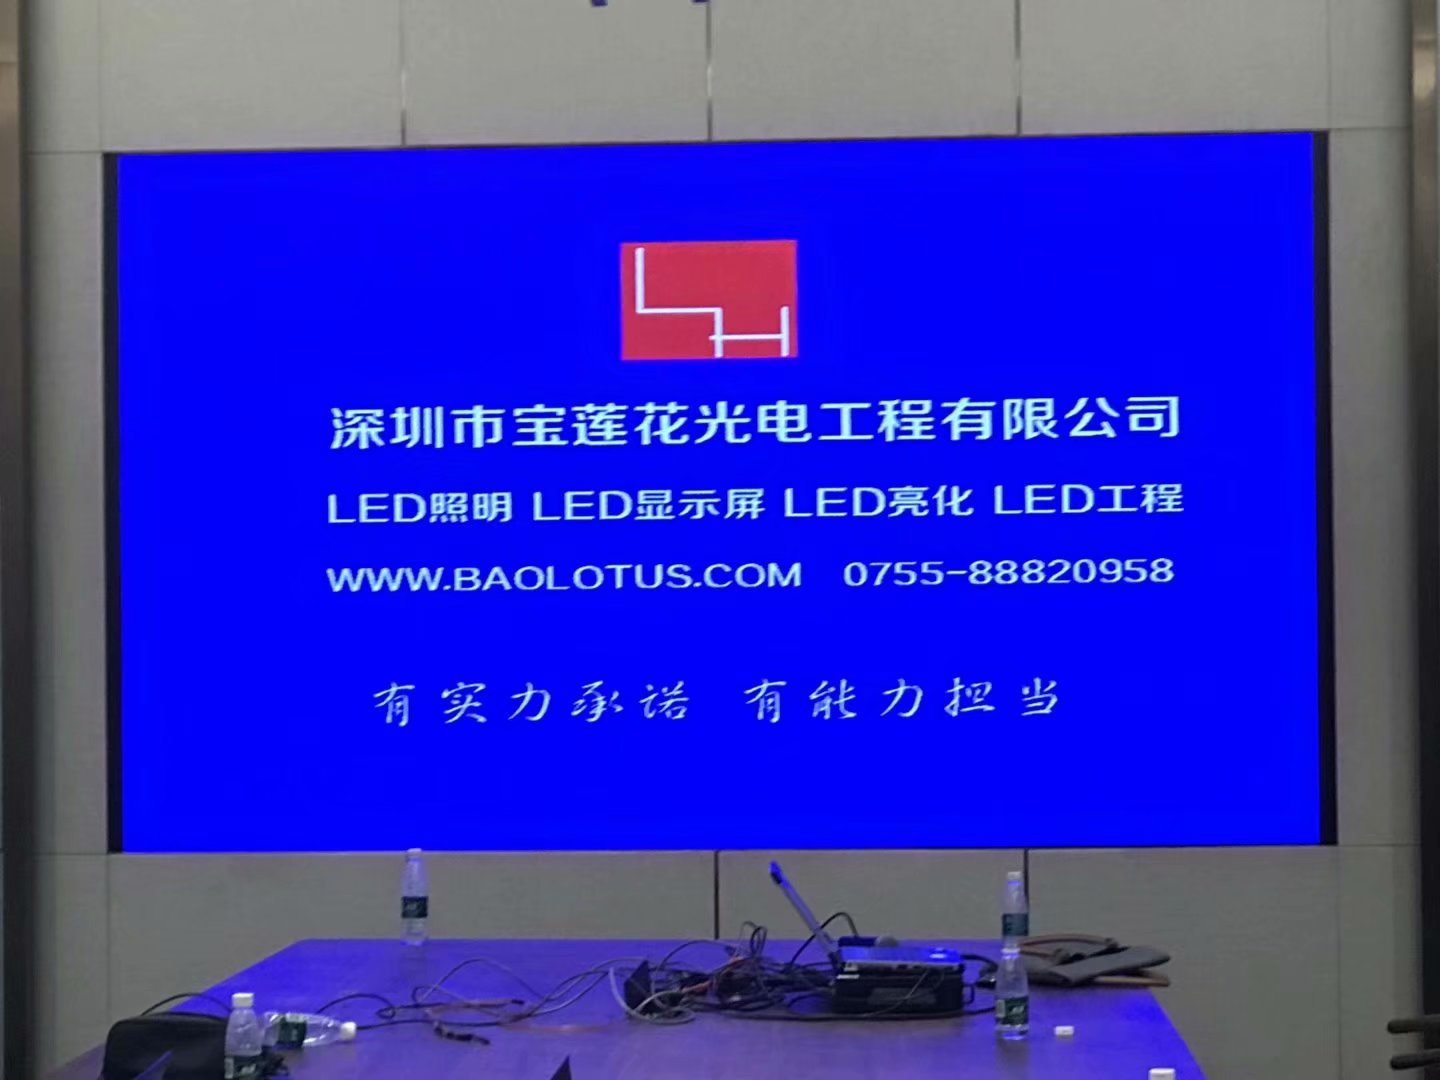 深圳市宝莲花光电工程有限公司 LED显示屏 LED照明工程的设计及施工